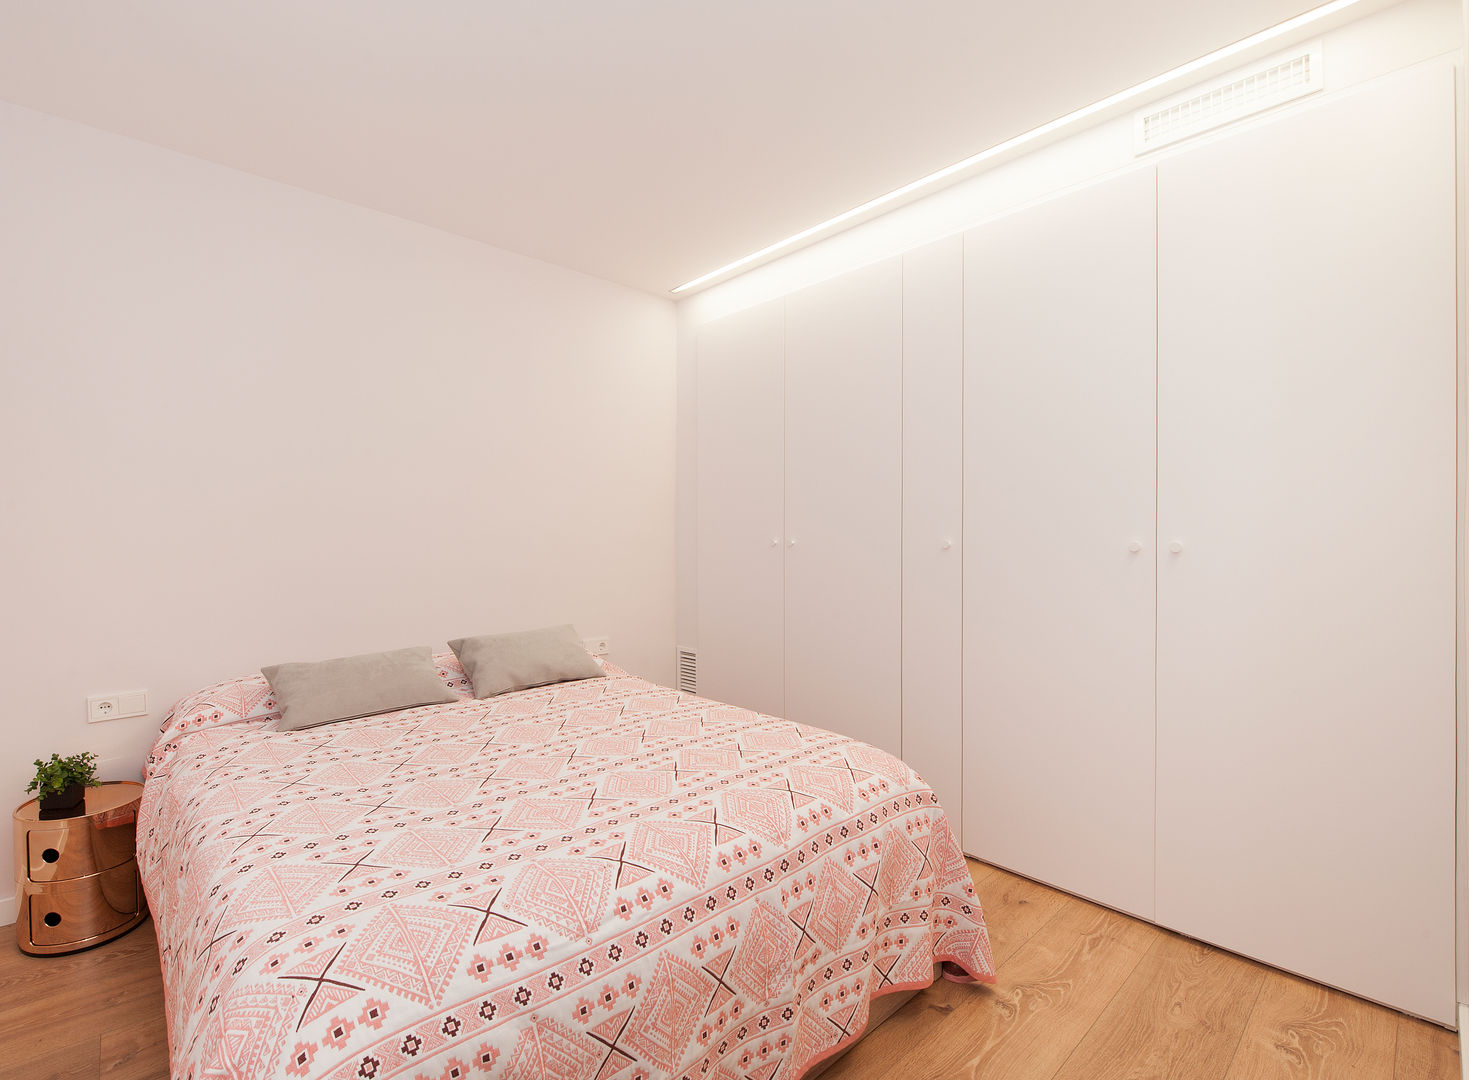 Restaurar la Armonía y el Equilibrio con el Feng Shui en este Apartamento en Barcelona, Cristina Jové Cristina Jové Camera da letto moderna Letti e testate